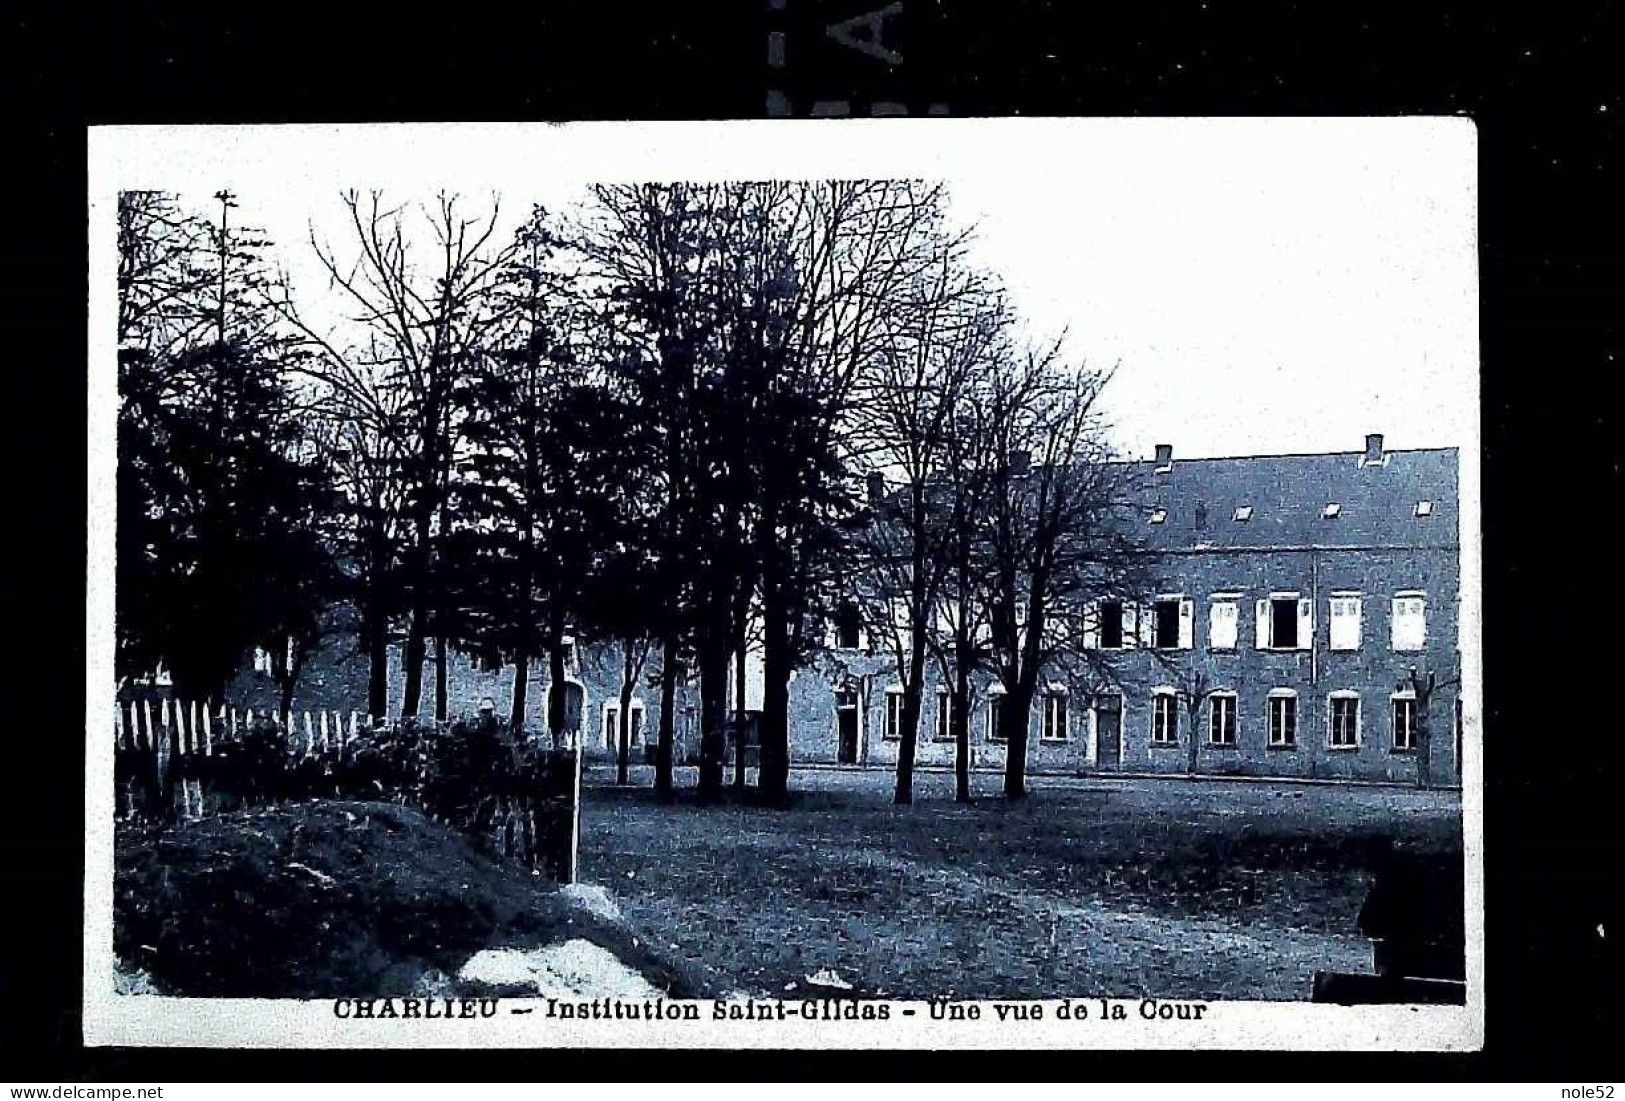 8€ : Institution Saint Gildas - Une Vue De La Cour - Charlieu